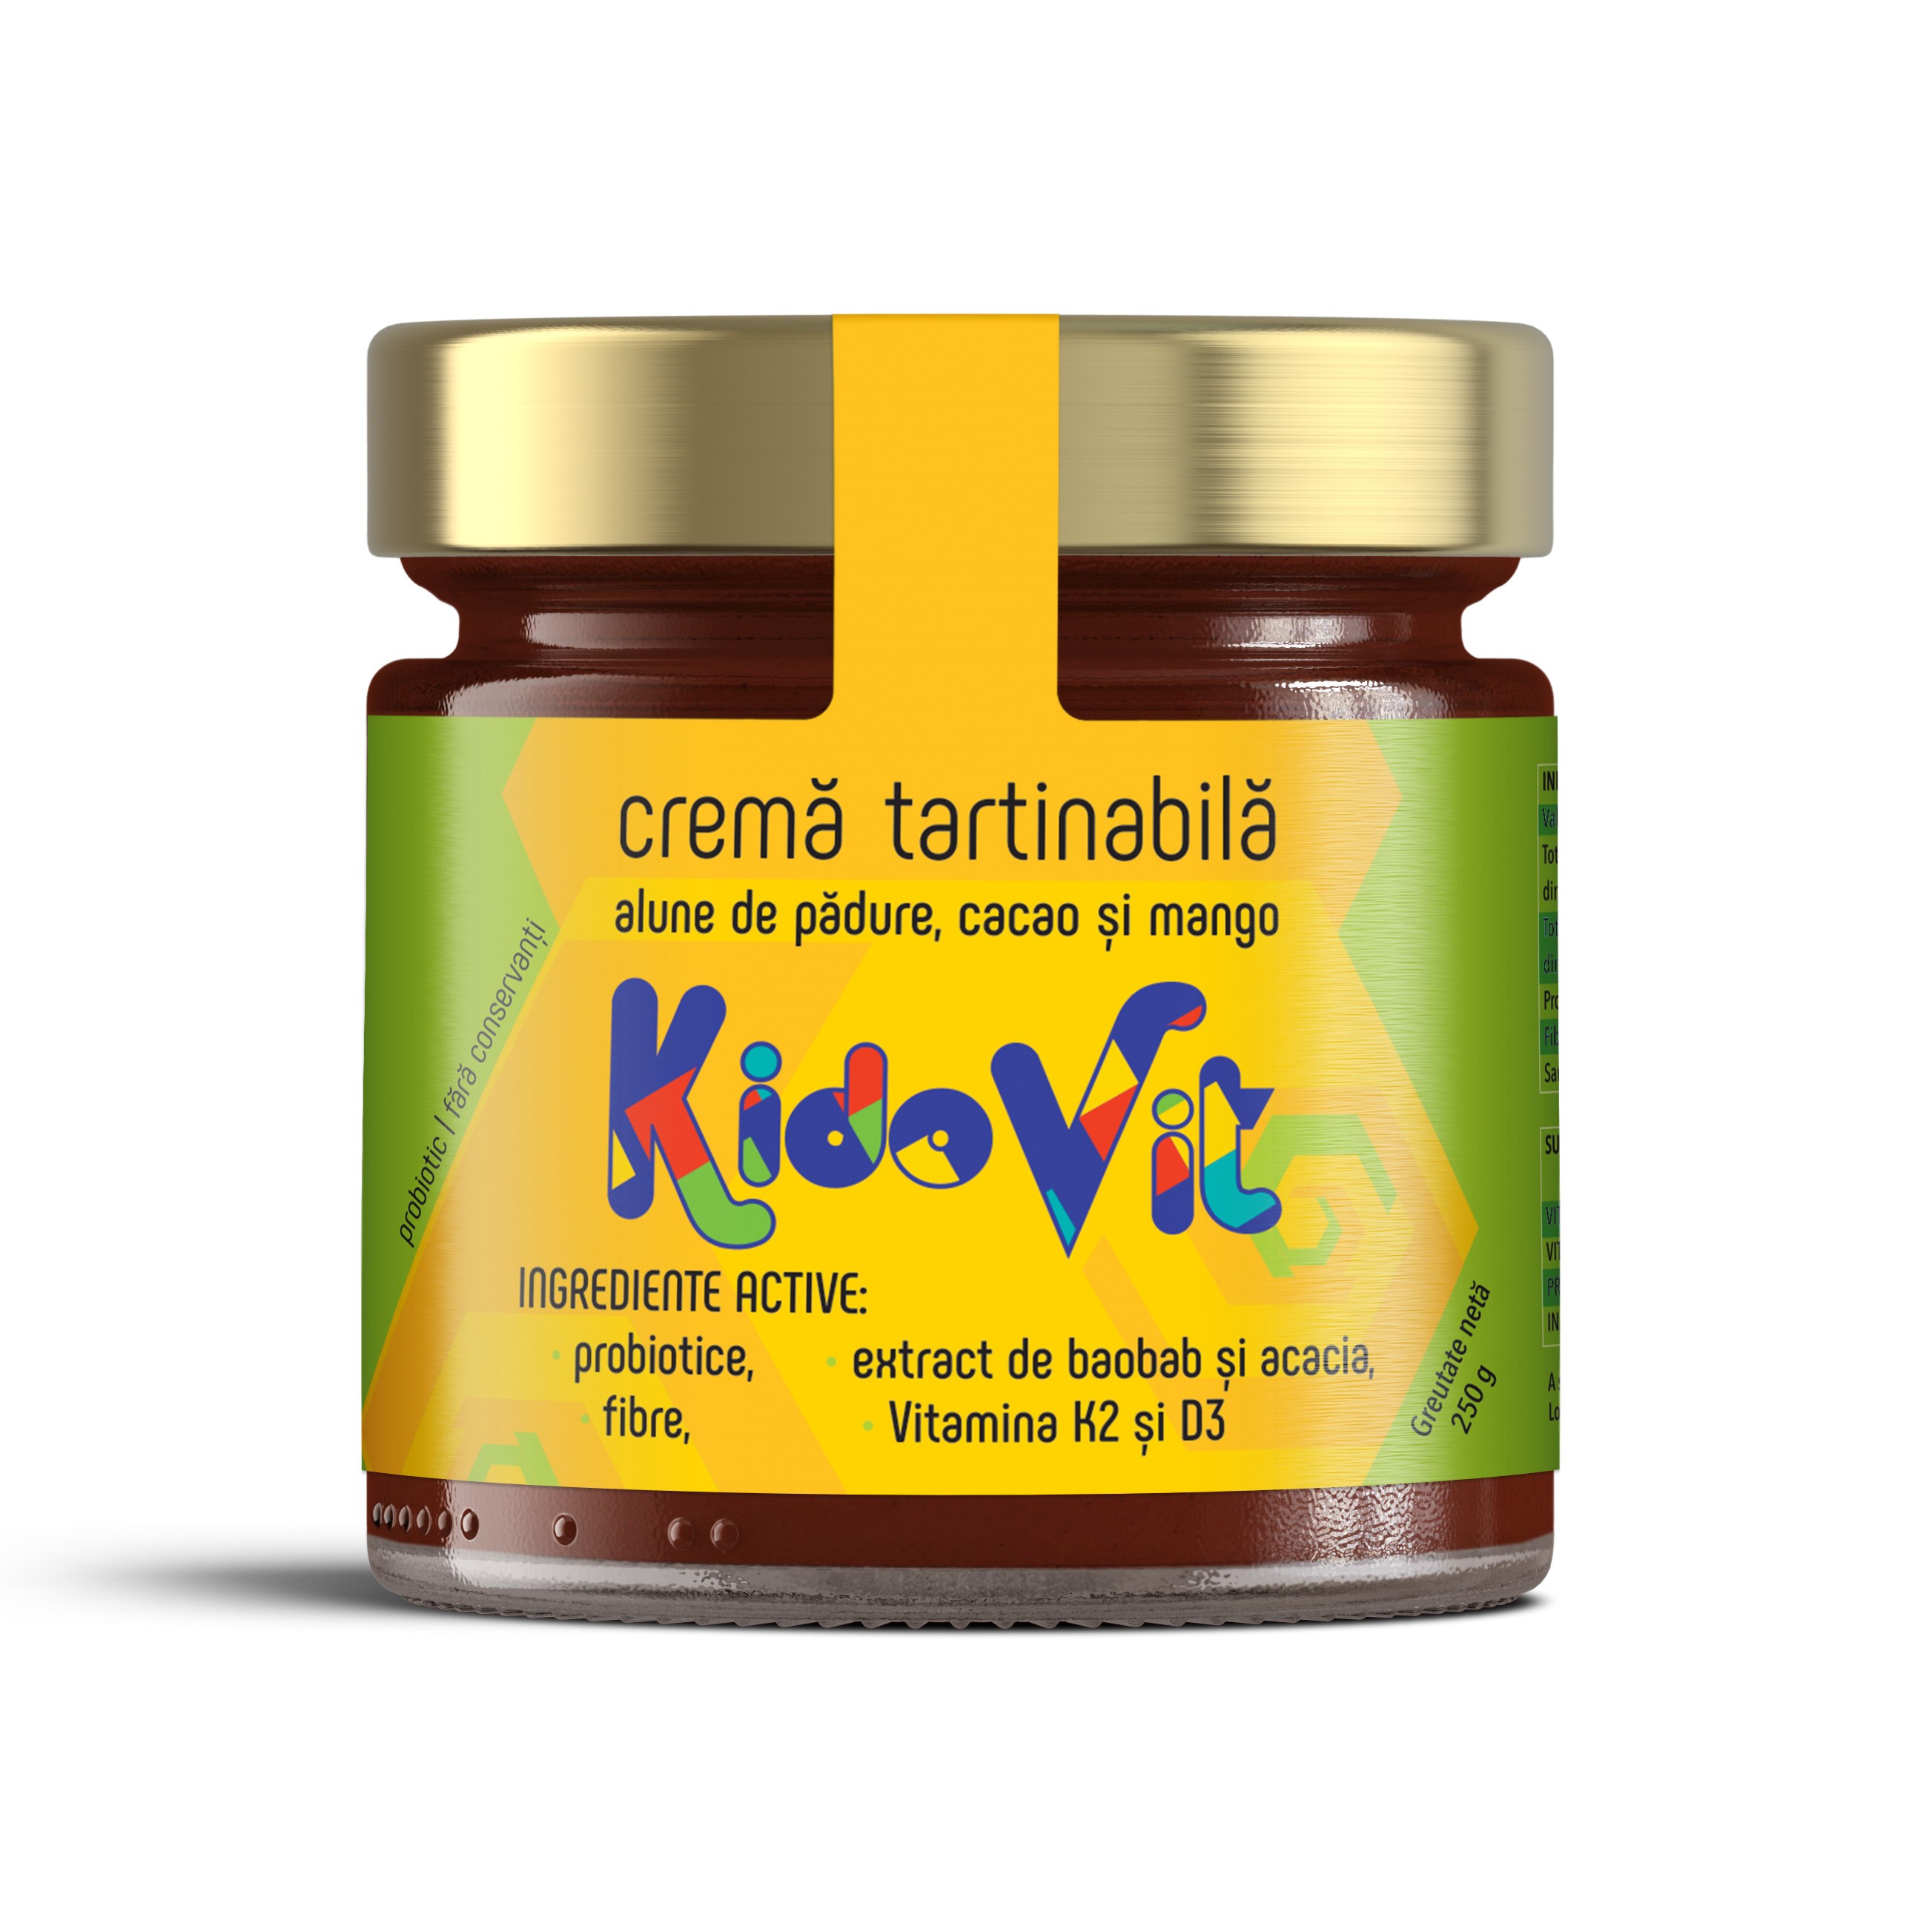 Crema tartinabila din cacao, mango, alune de pădure, KidoVit, 250 g, Remedia